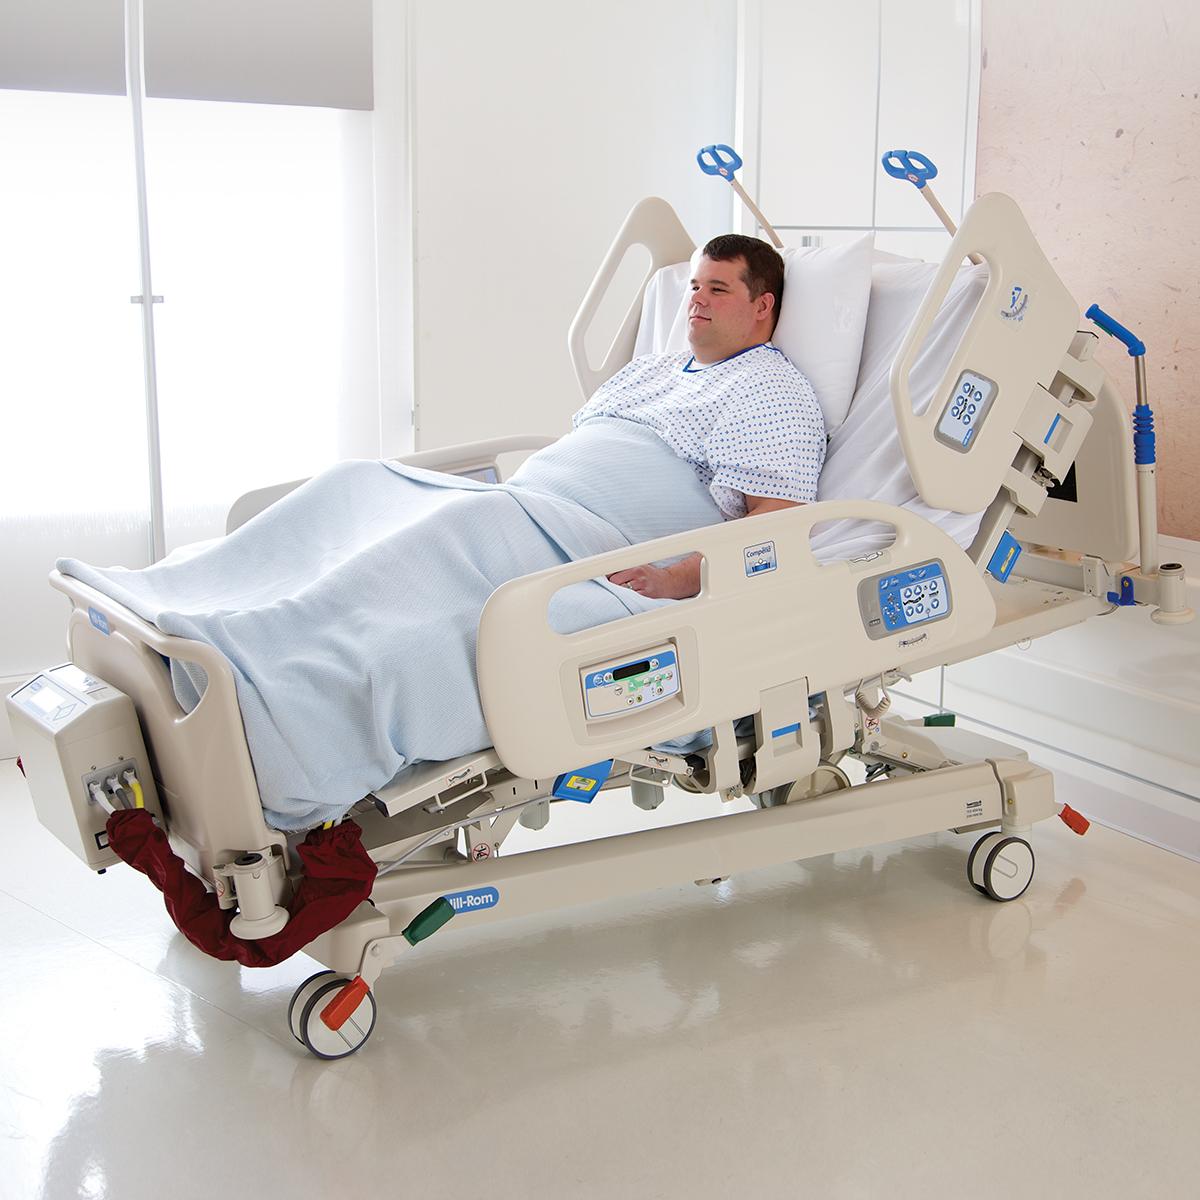 La fonction FlexAfoot permet d’allonger rapidement le lit bariatrique Compella pour s’adapter aux patients de grande taille.